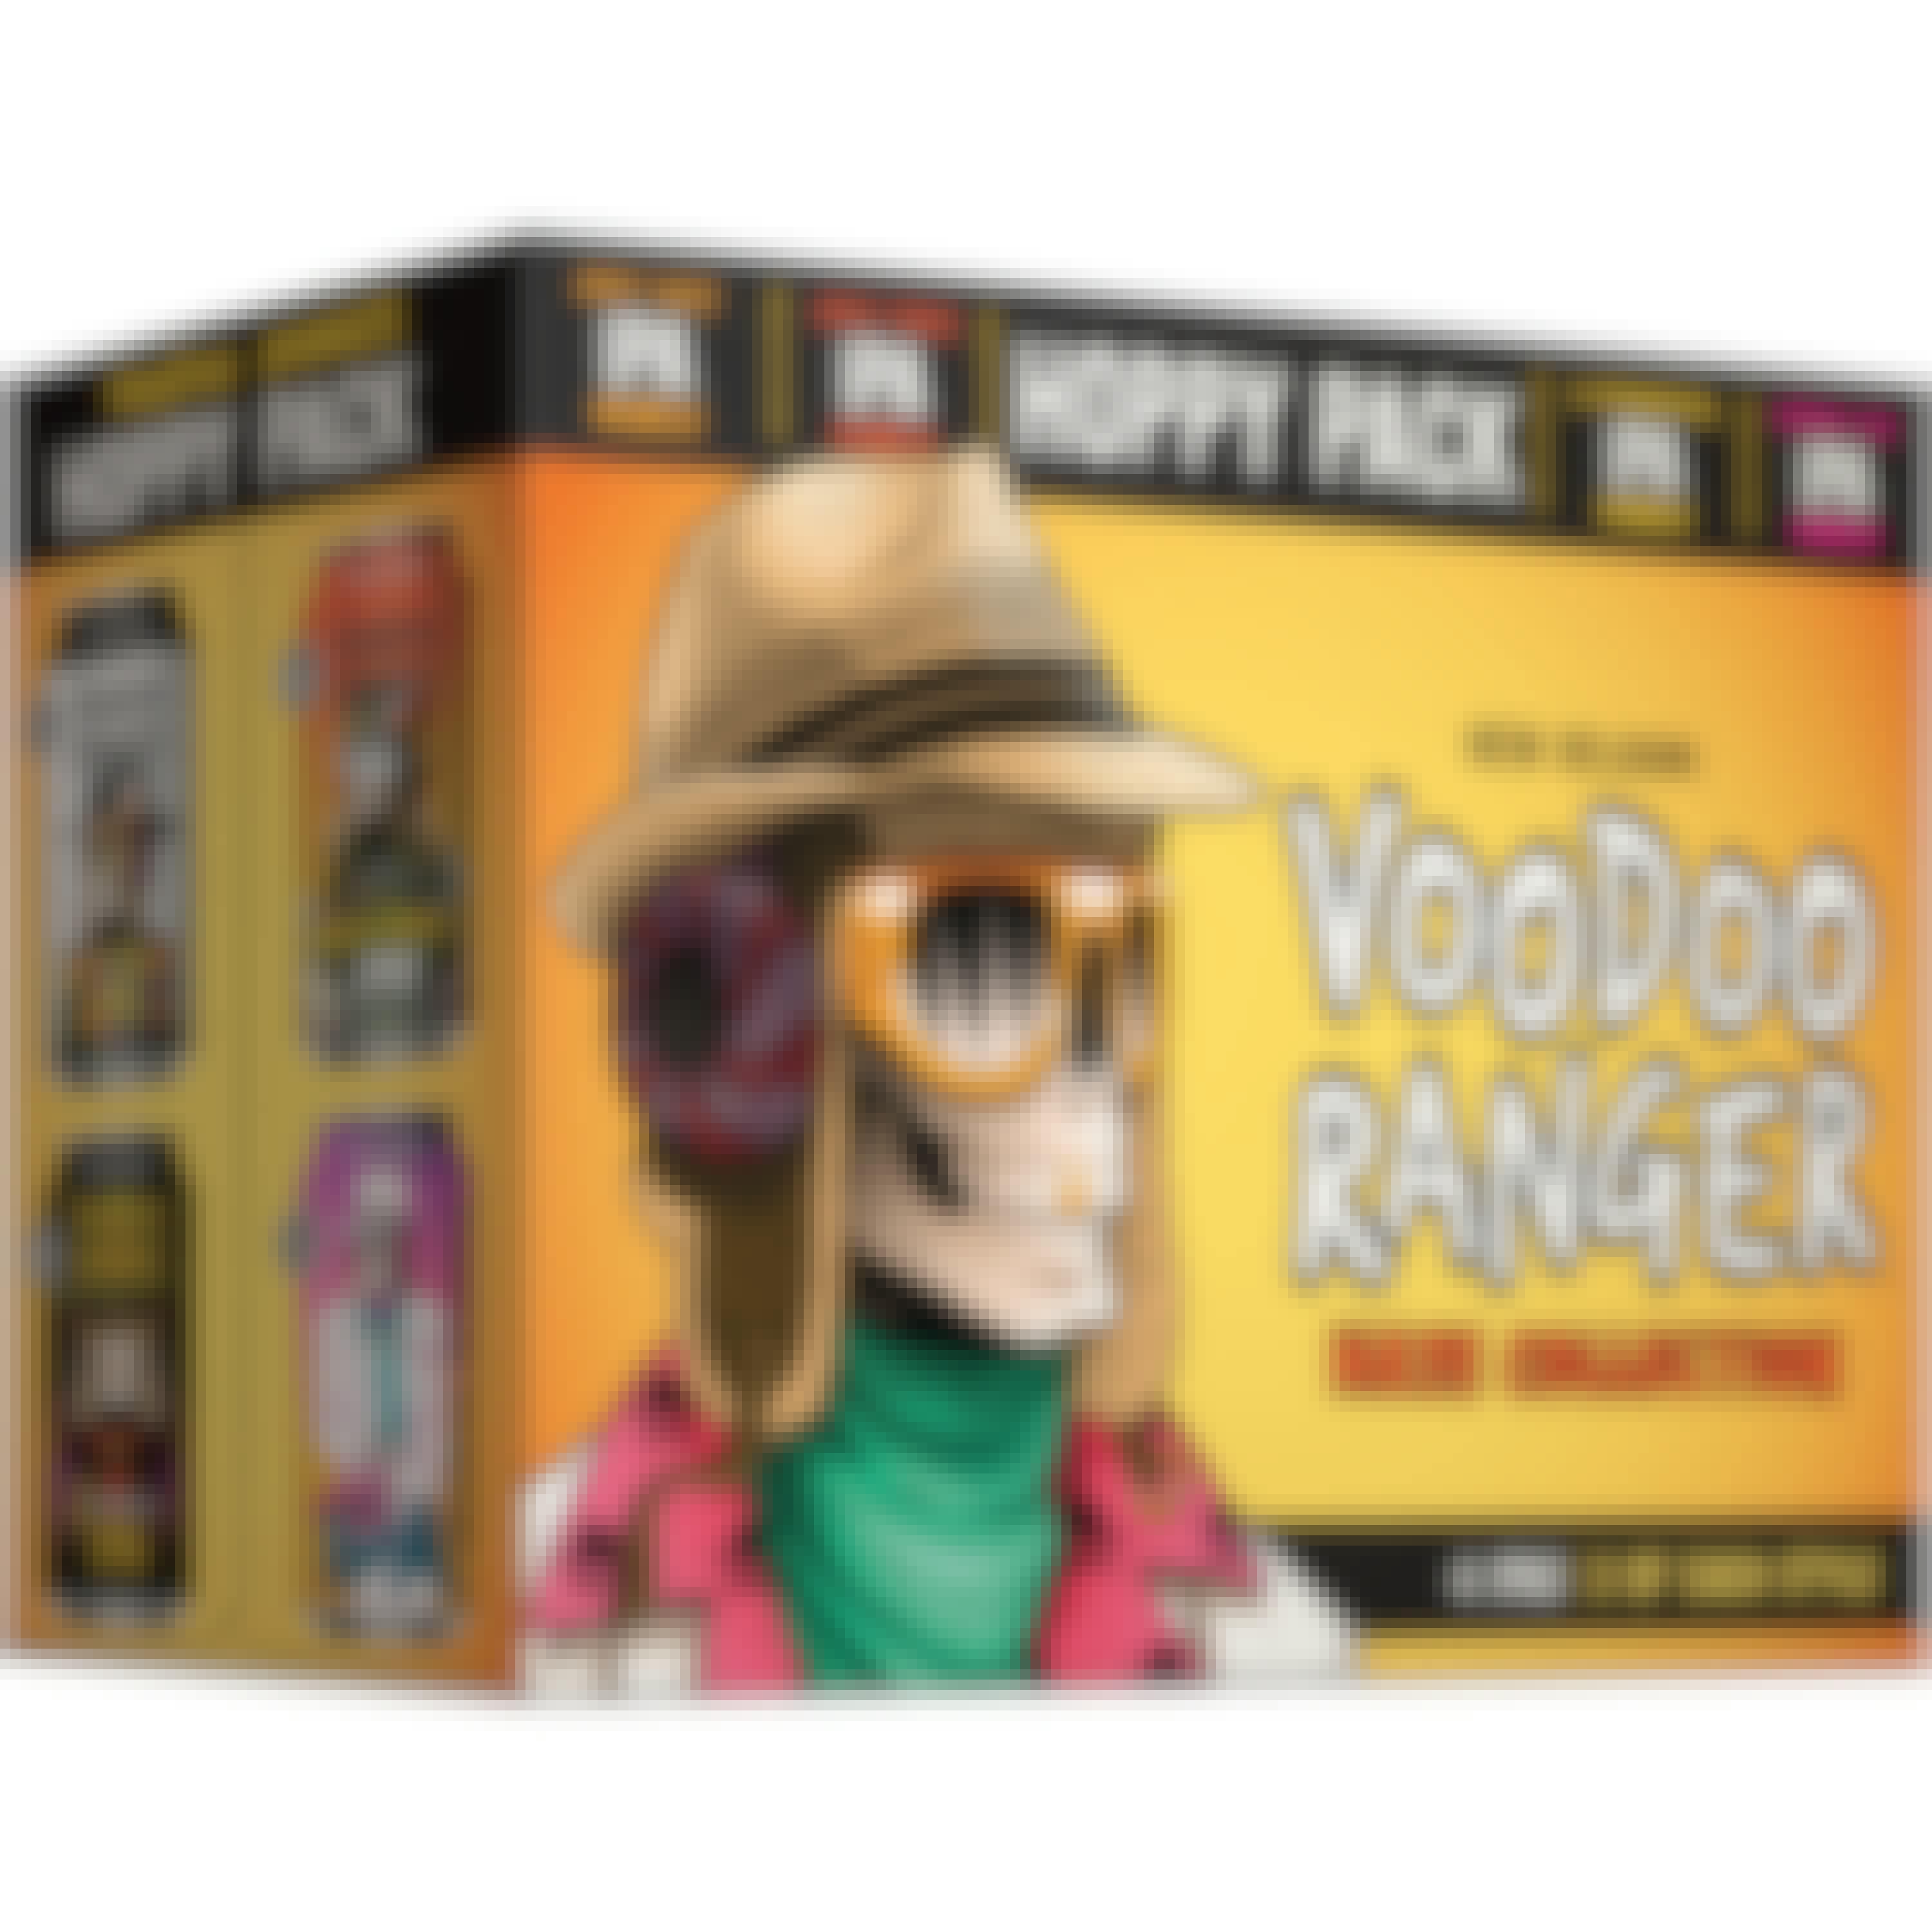 New Belgium Voodoo Ranger Hoppy Variety Pack 12 pack 12 oz.